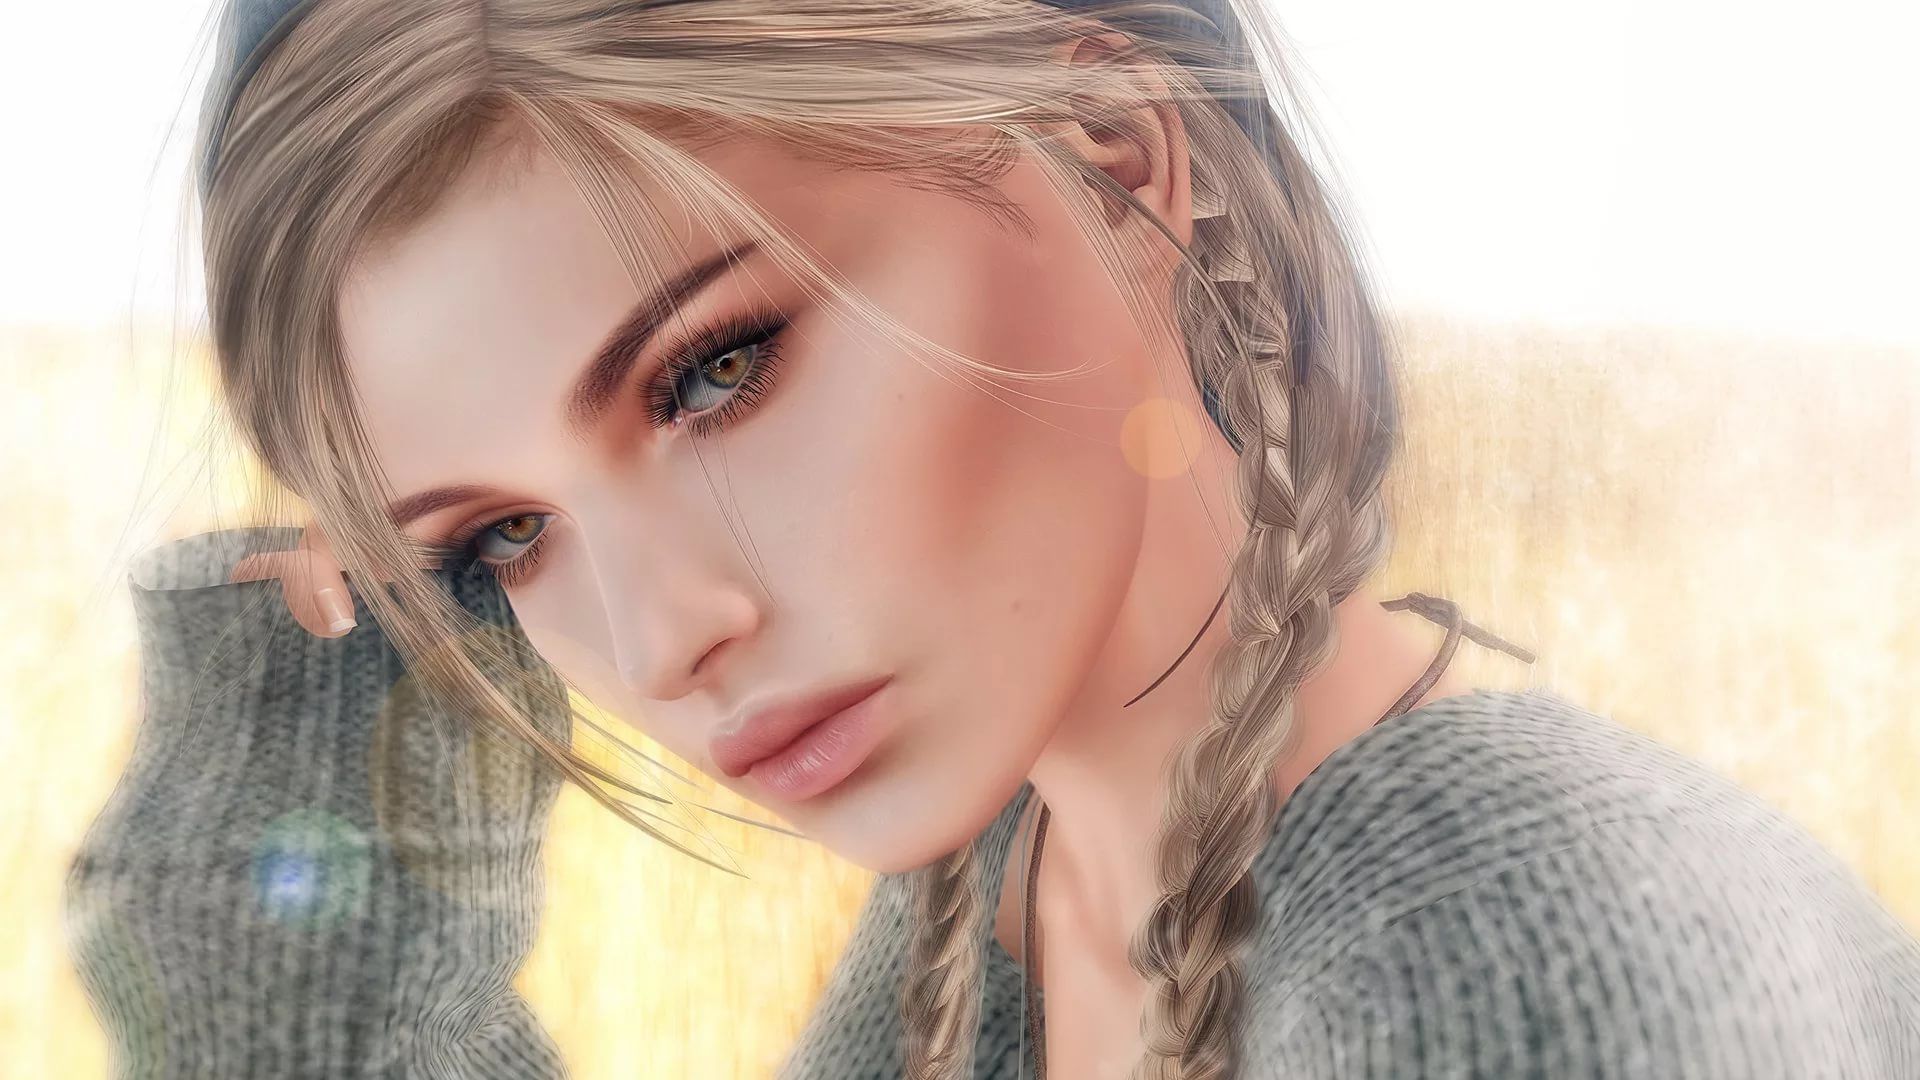 3d Girl Laptop Wallpaper - Blonde Hair Girl Digital Art - HD Wallpaper 